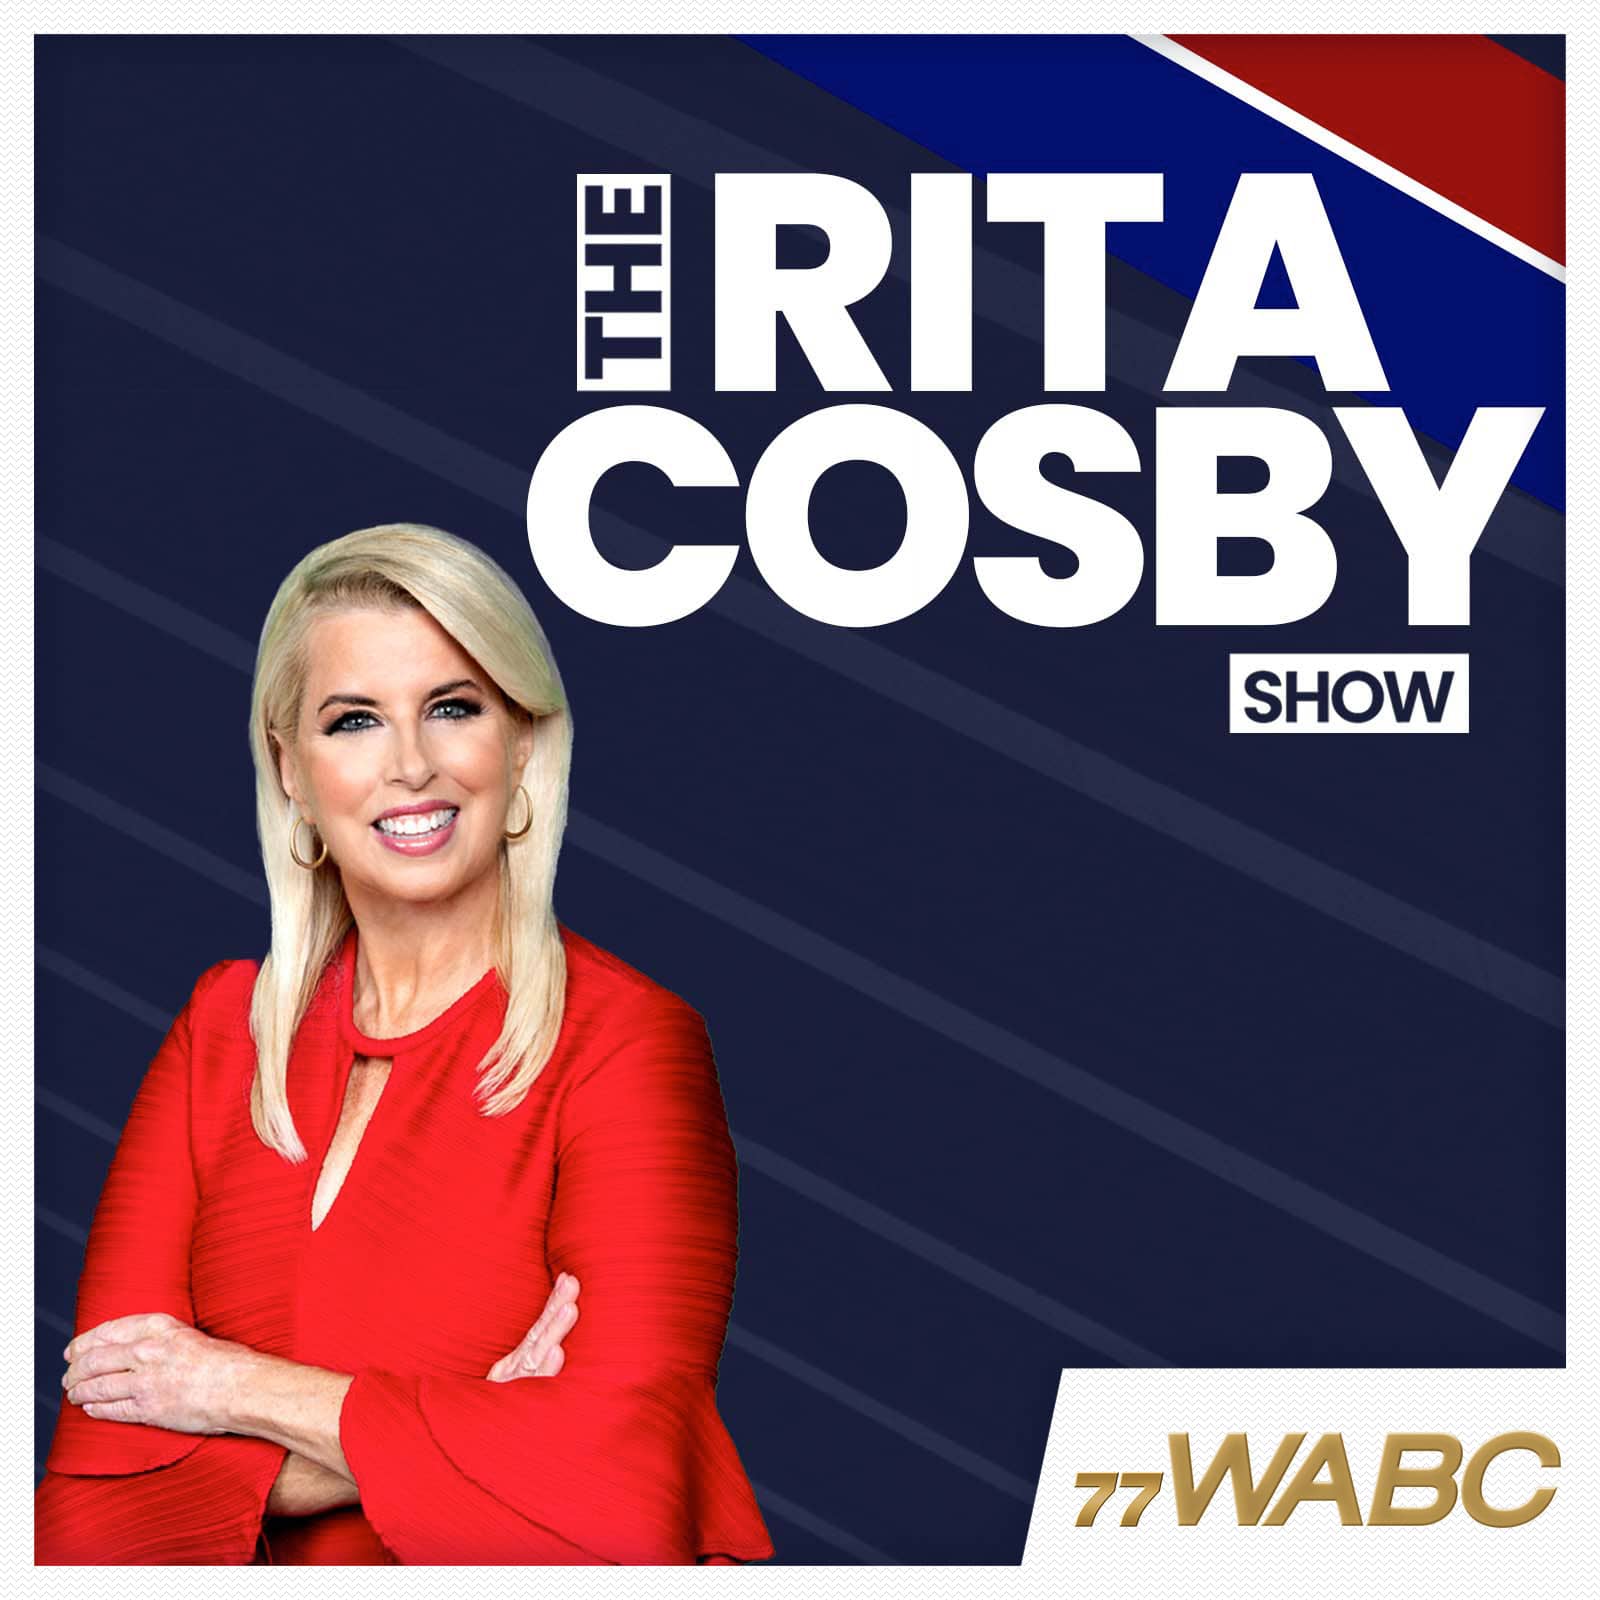 rita-cosby-podcast-new-logo-243